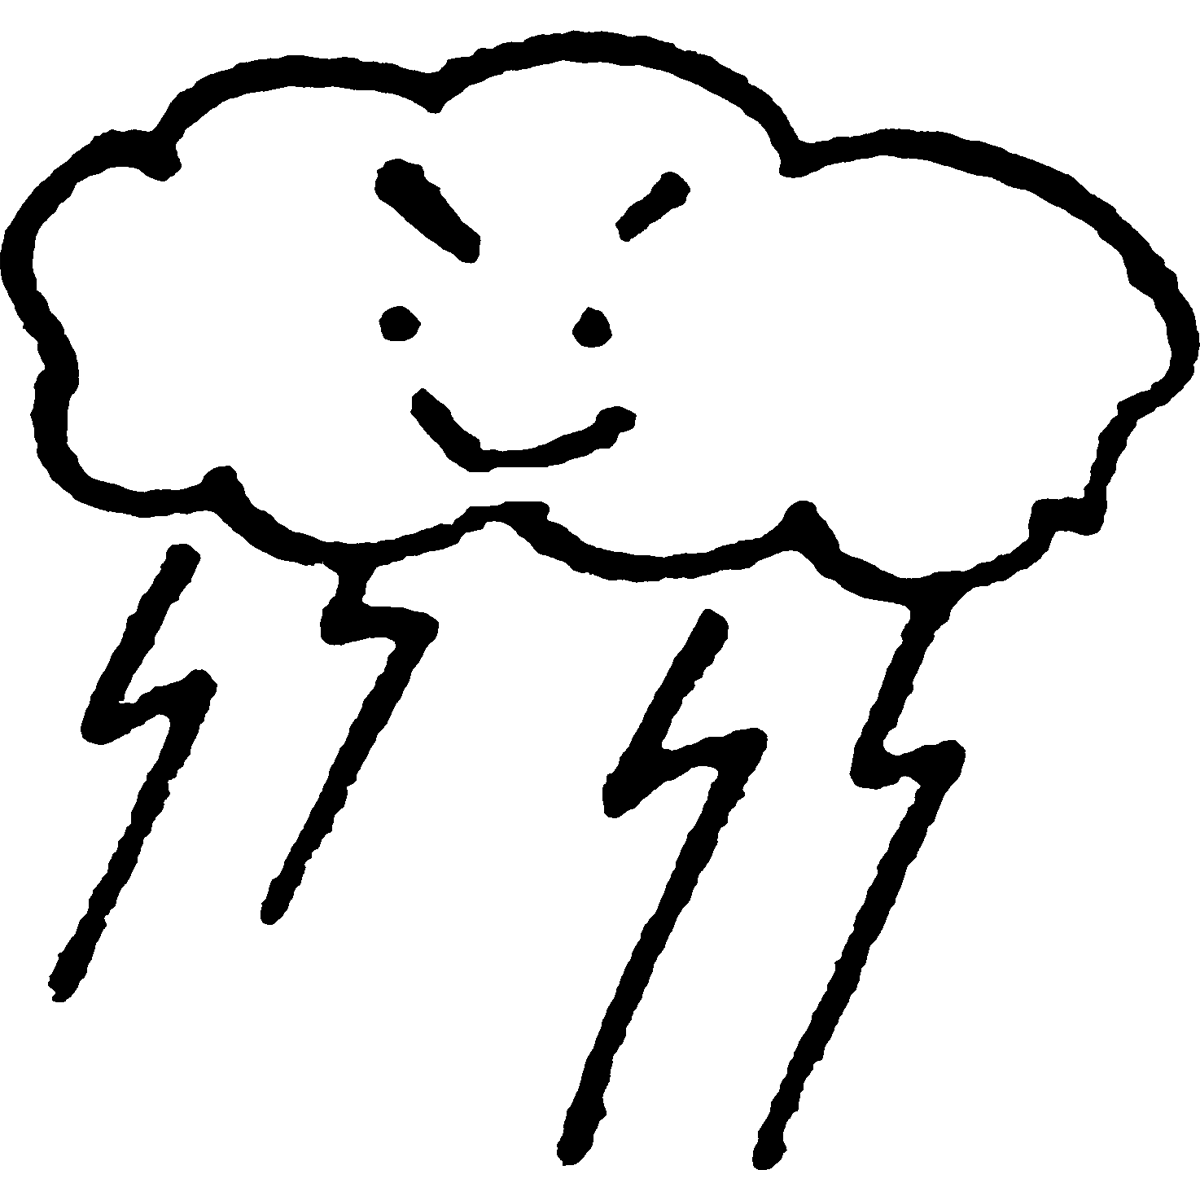 雲と雷のイラスト / Clouds and Thunder Illustration